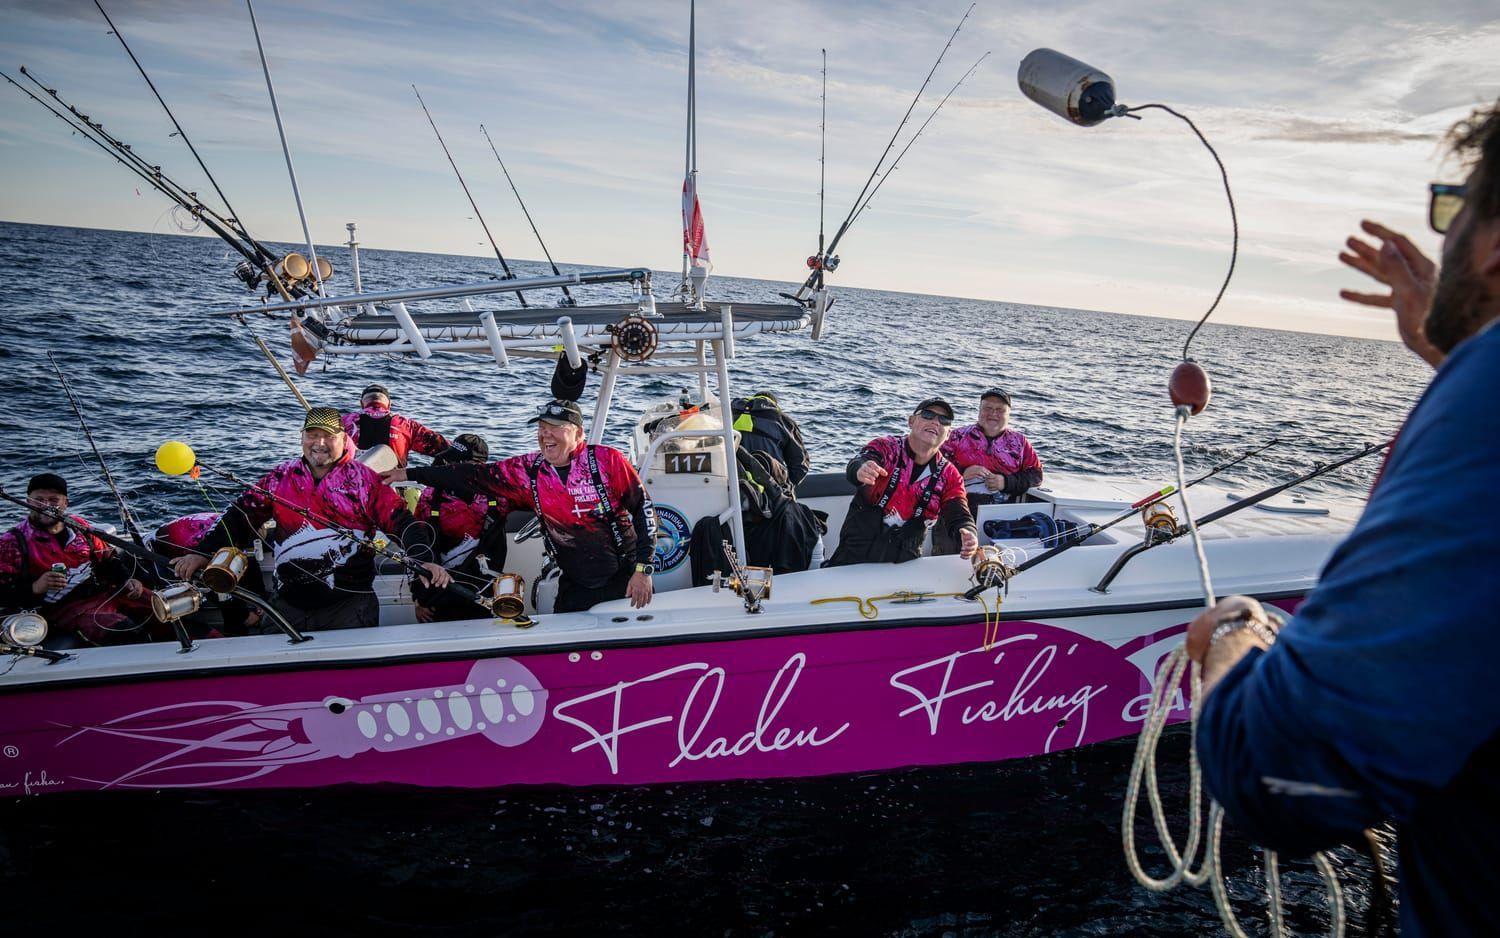 ”När forskarna gör tummen upp och tonfisken simmar i väg, det är världsklass” säger Roberth Hellberg, kapten på Pink lady och i mitten av bilden.